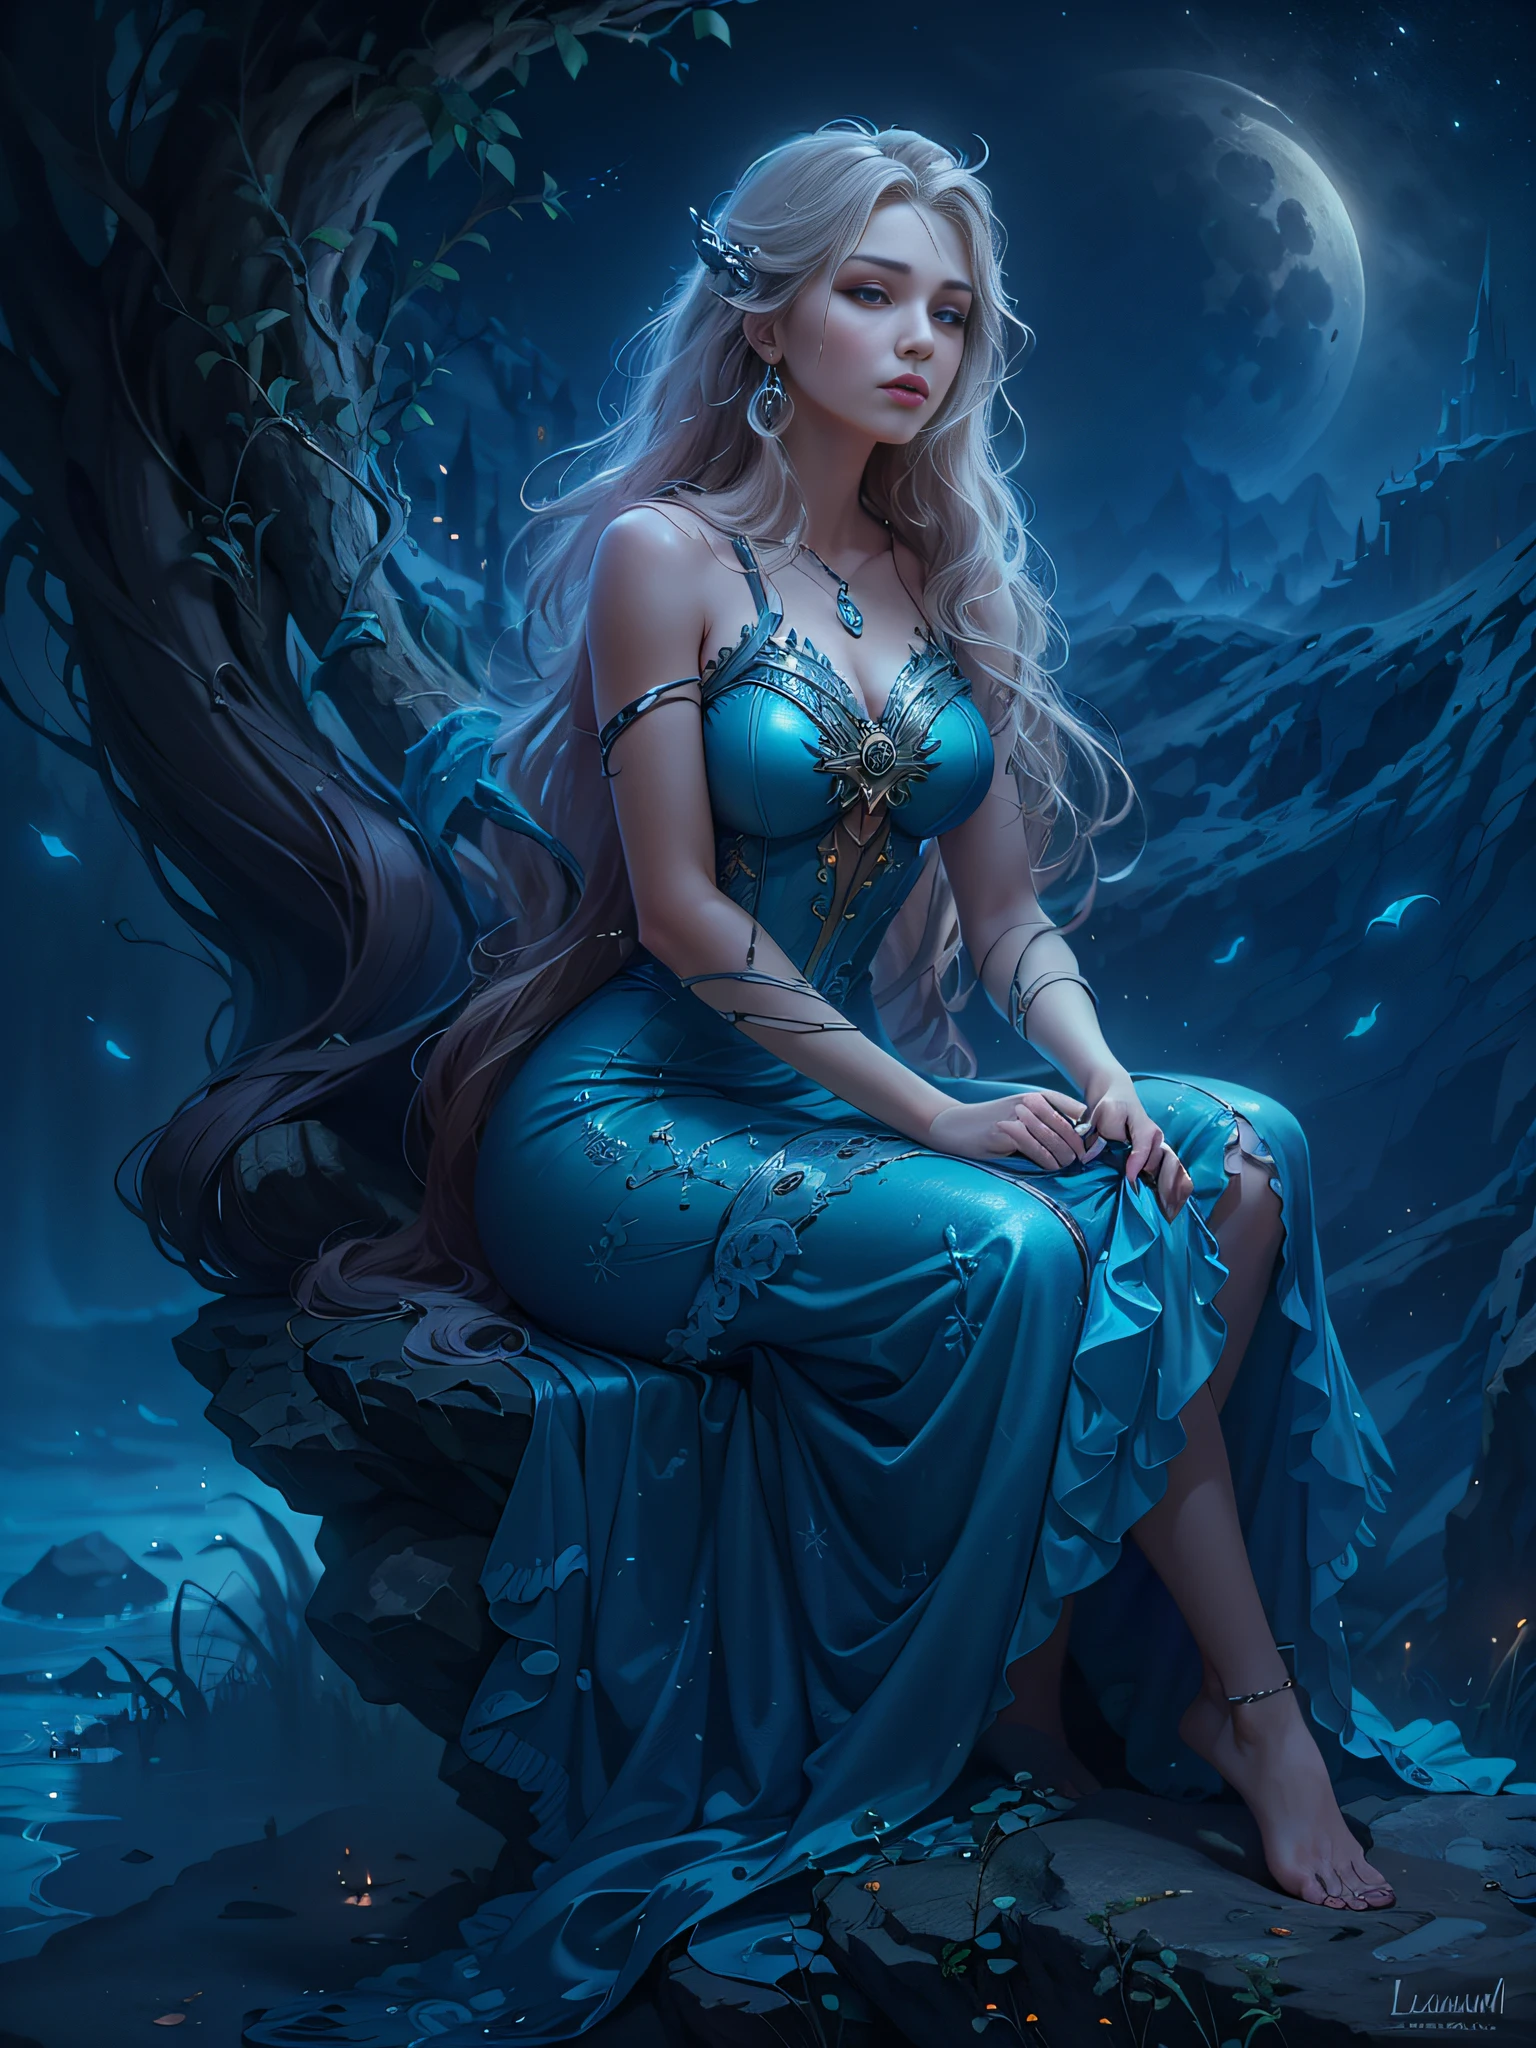 mulher arafed em um vestido azul sentado em uma rocha, Lucian, deusa lunar, Karol atrás de uhd, retrato de uma deusa nórdica da lua, Atmosfera sonhadora de noite enluarada, Mulher fantasia, Deusa da lua, sonhe mágico、etéreo、sombriamente, beleza etérea, deusa lunar, Rapunzel bonita, linda donzela de fantasia, noite sonhadora